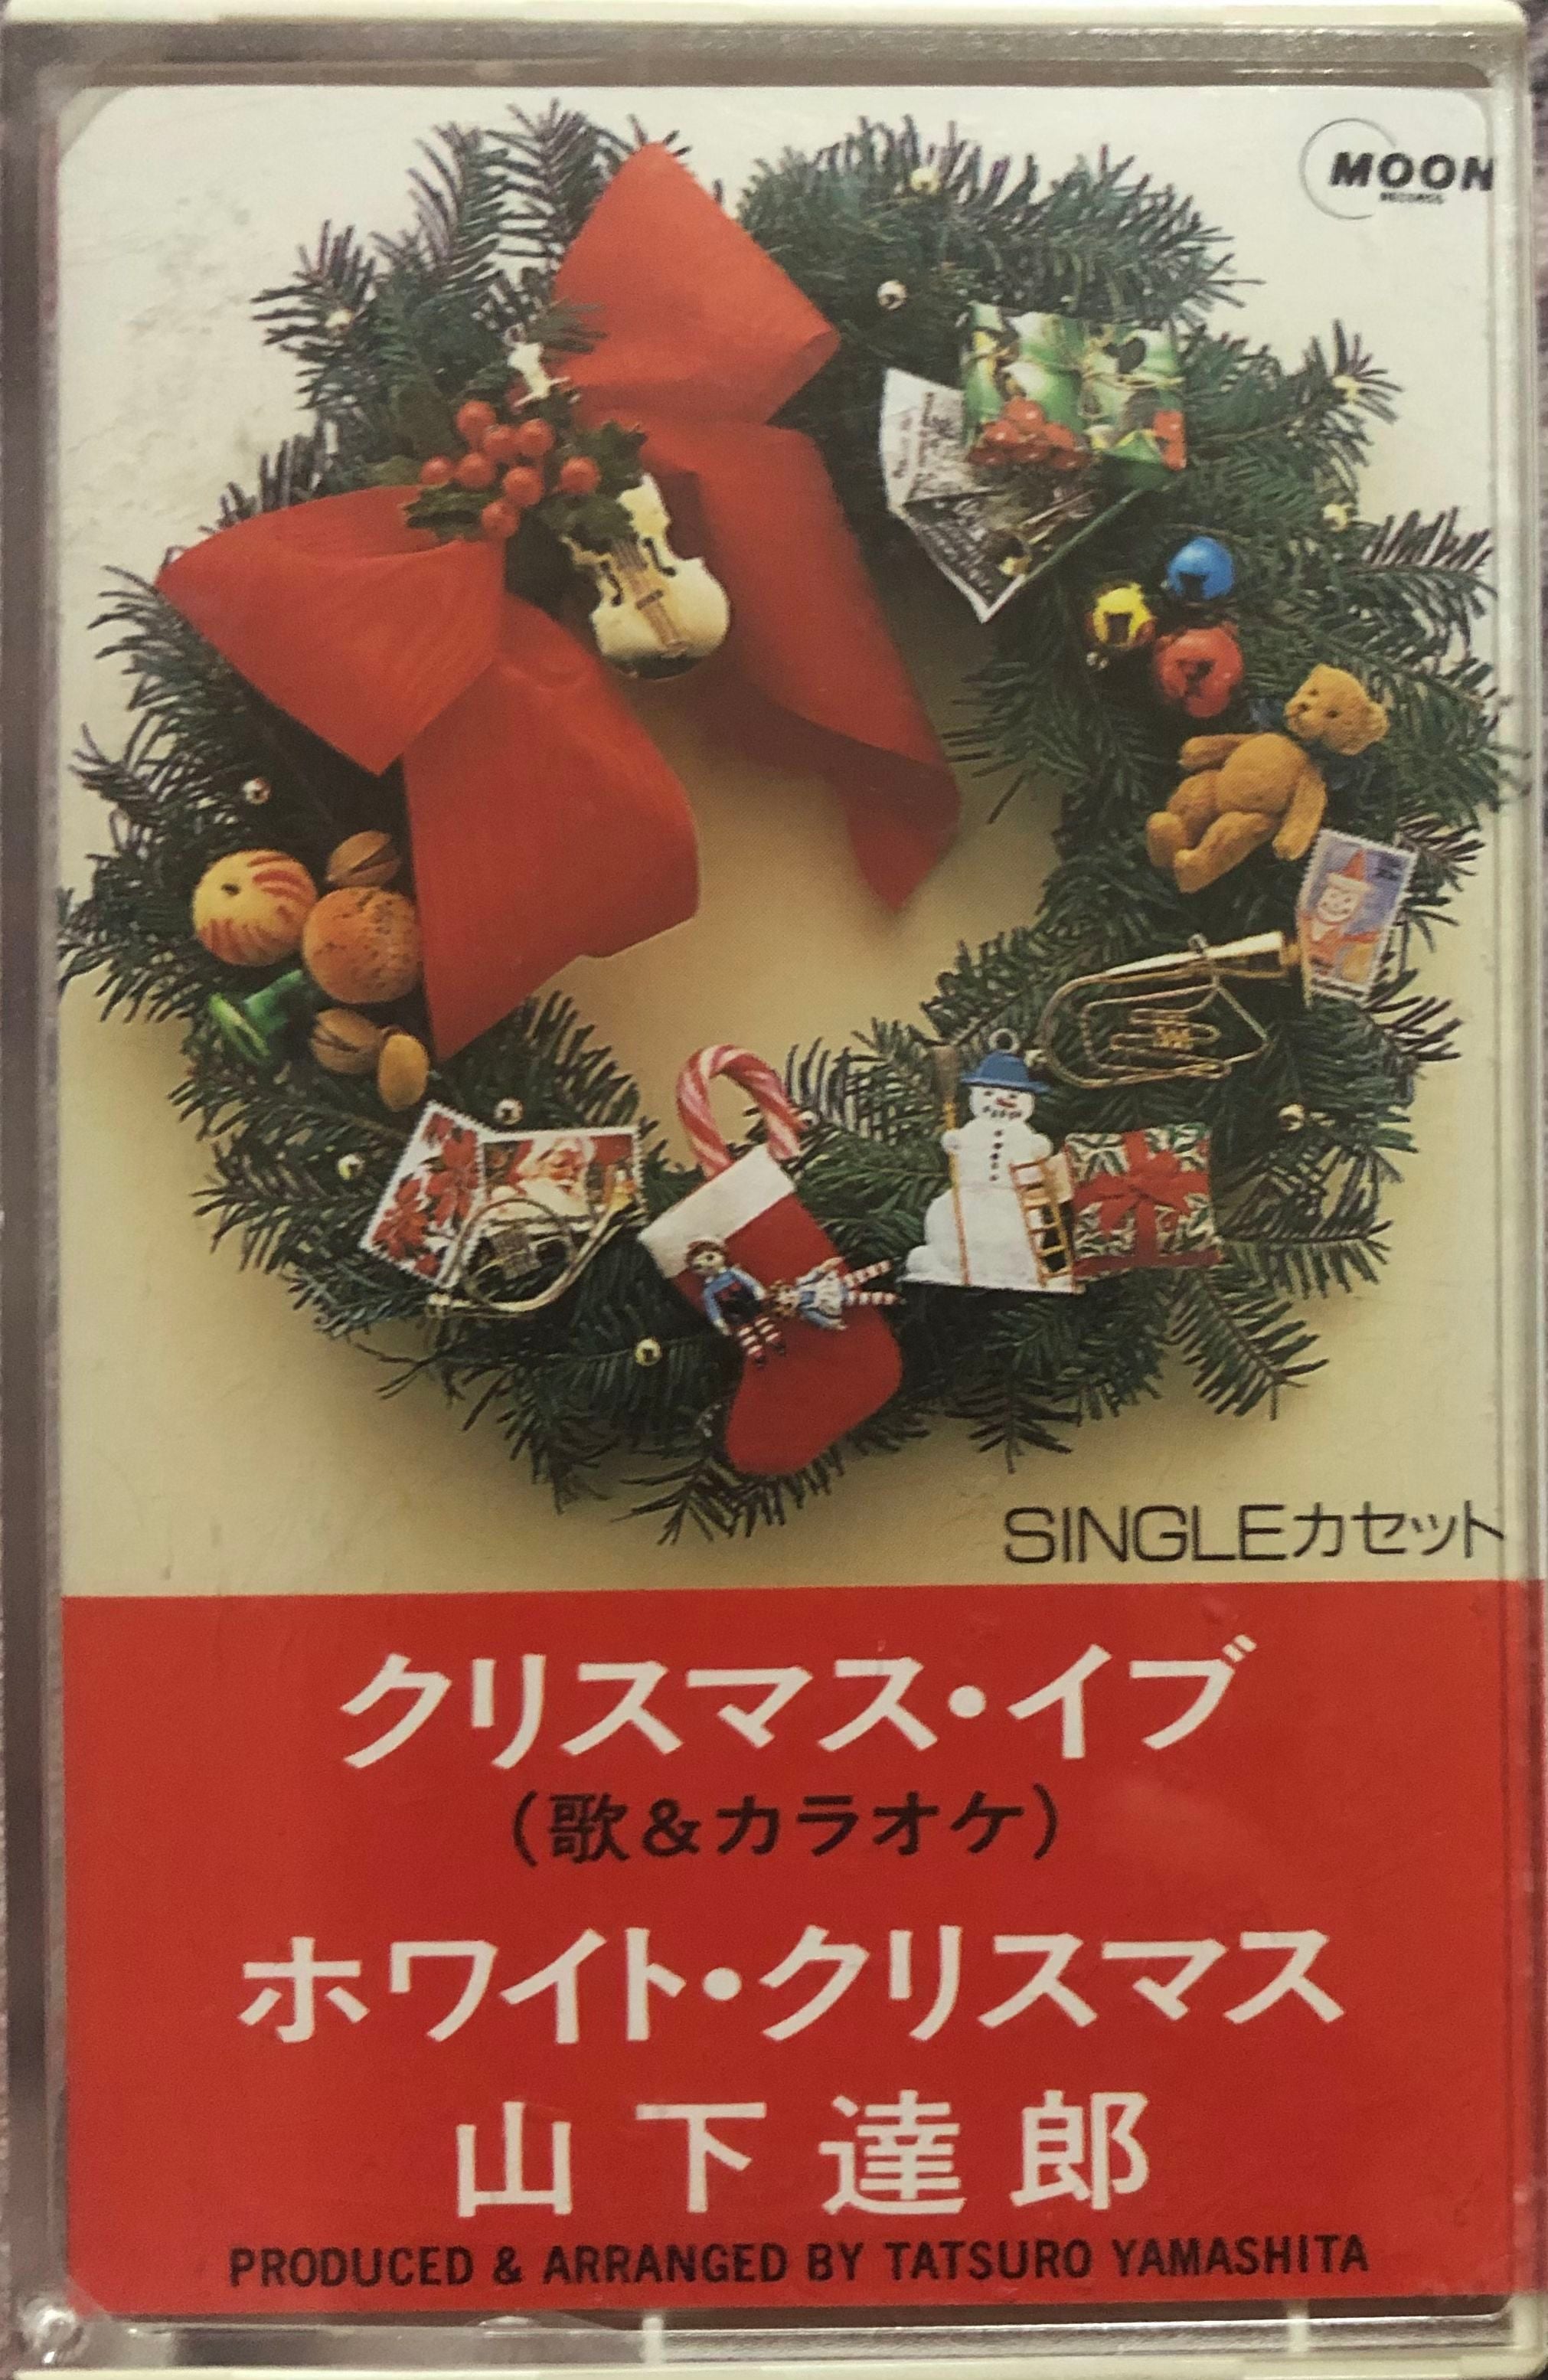 Tatsuro Yamashita u003d 山下達郎 u200e– Chritmas Eve u003d クリスマス・イブ (歌u0026カラオケ) – Galapagos  Records